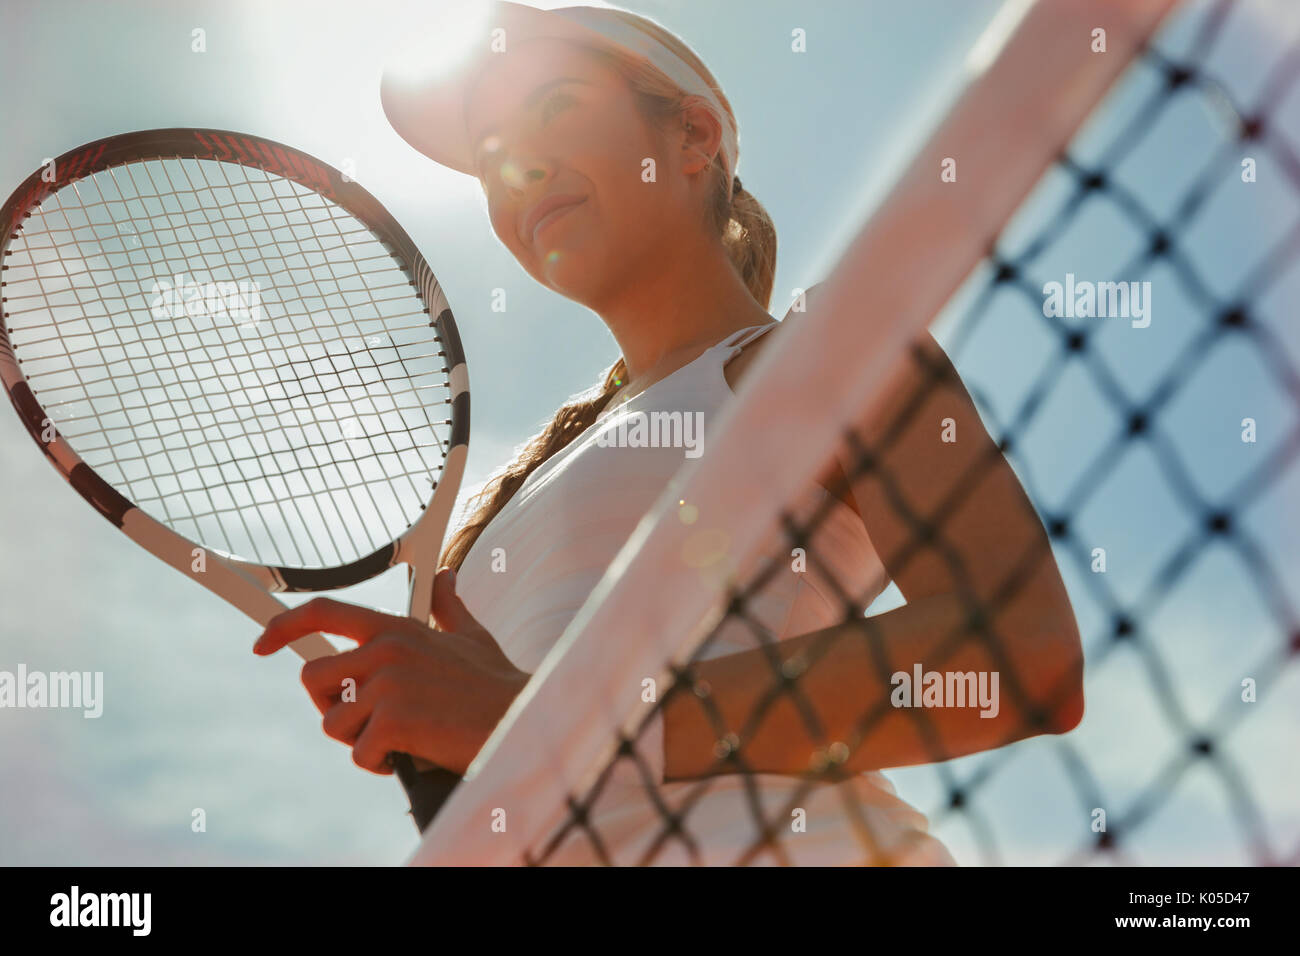 Certains jeunes tennis player holding tennis racket au filet Banque D'Images